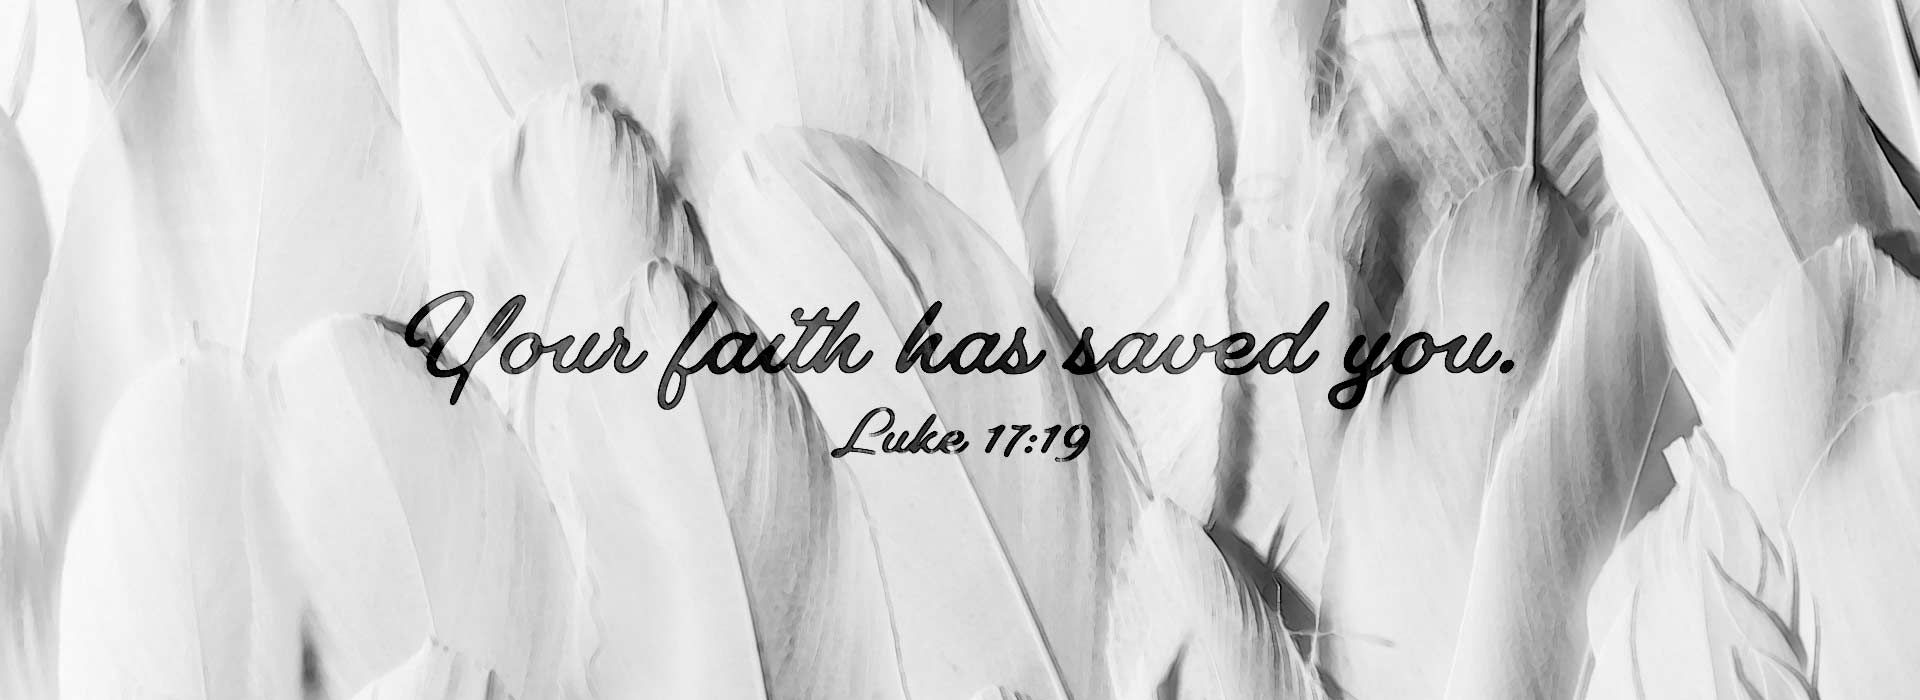 Luke 17:19